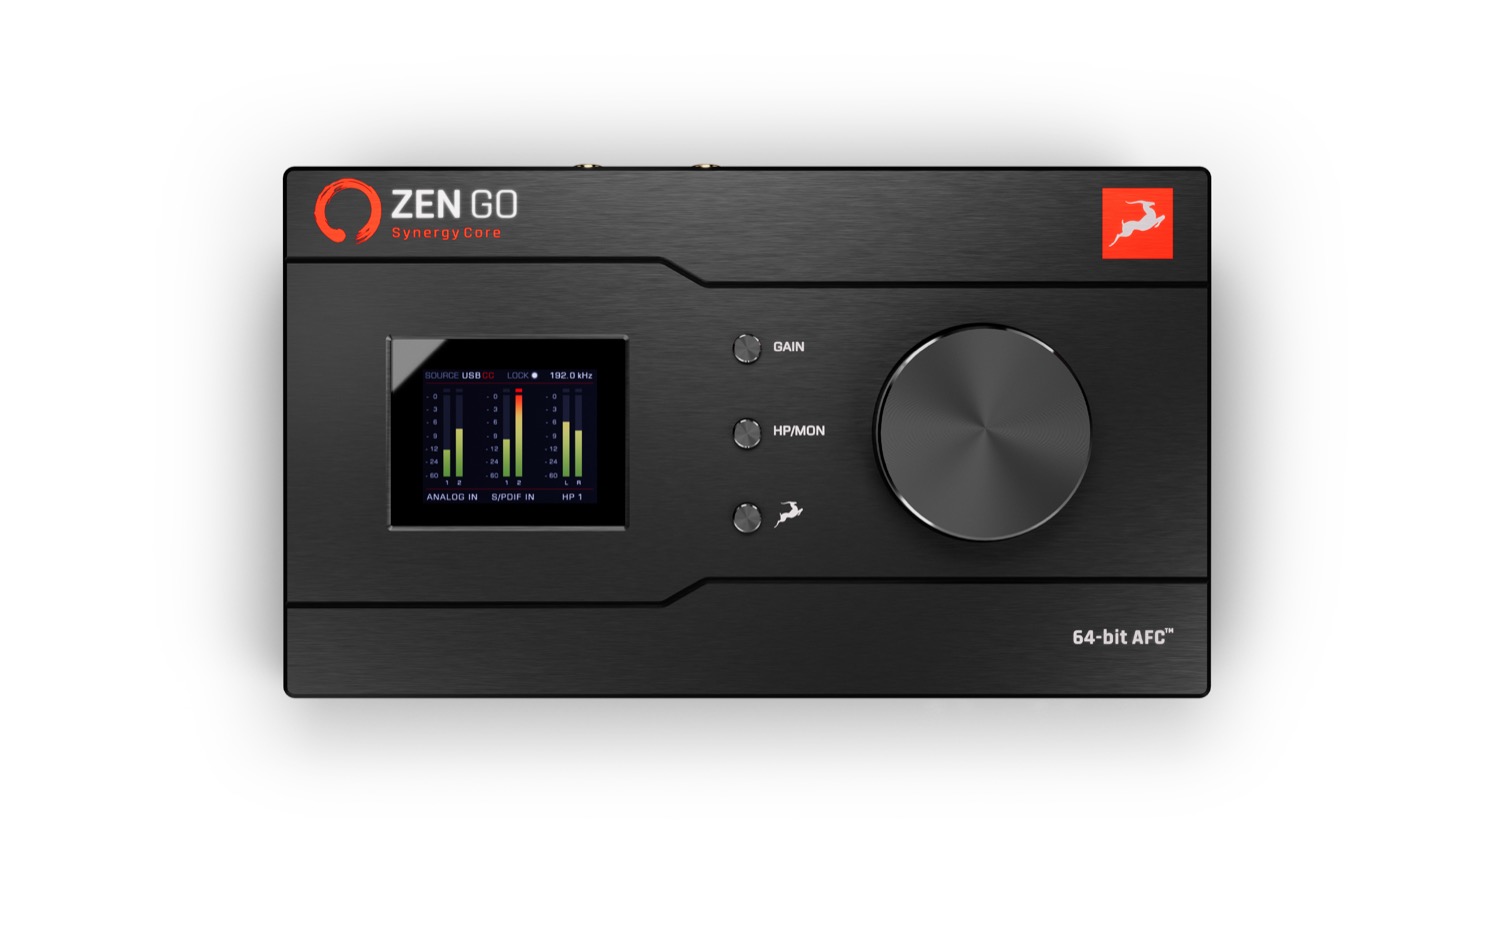 Antelope Audio Zen Go Synergy Core USB